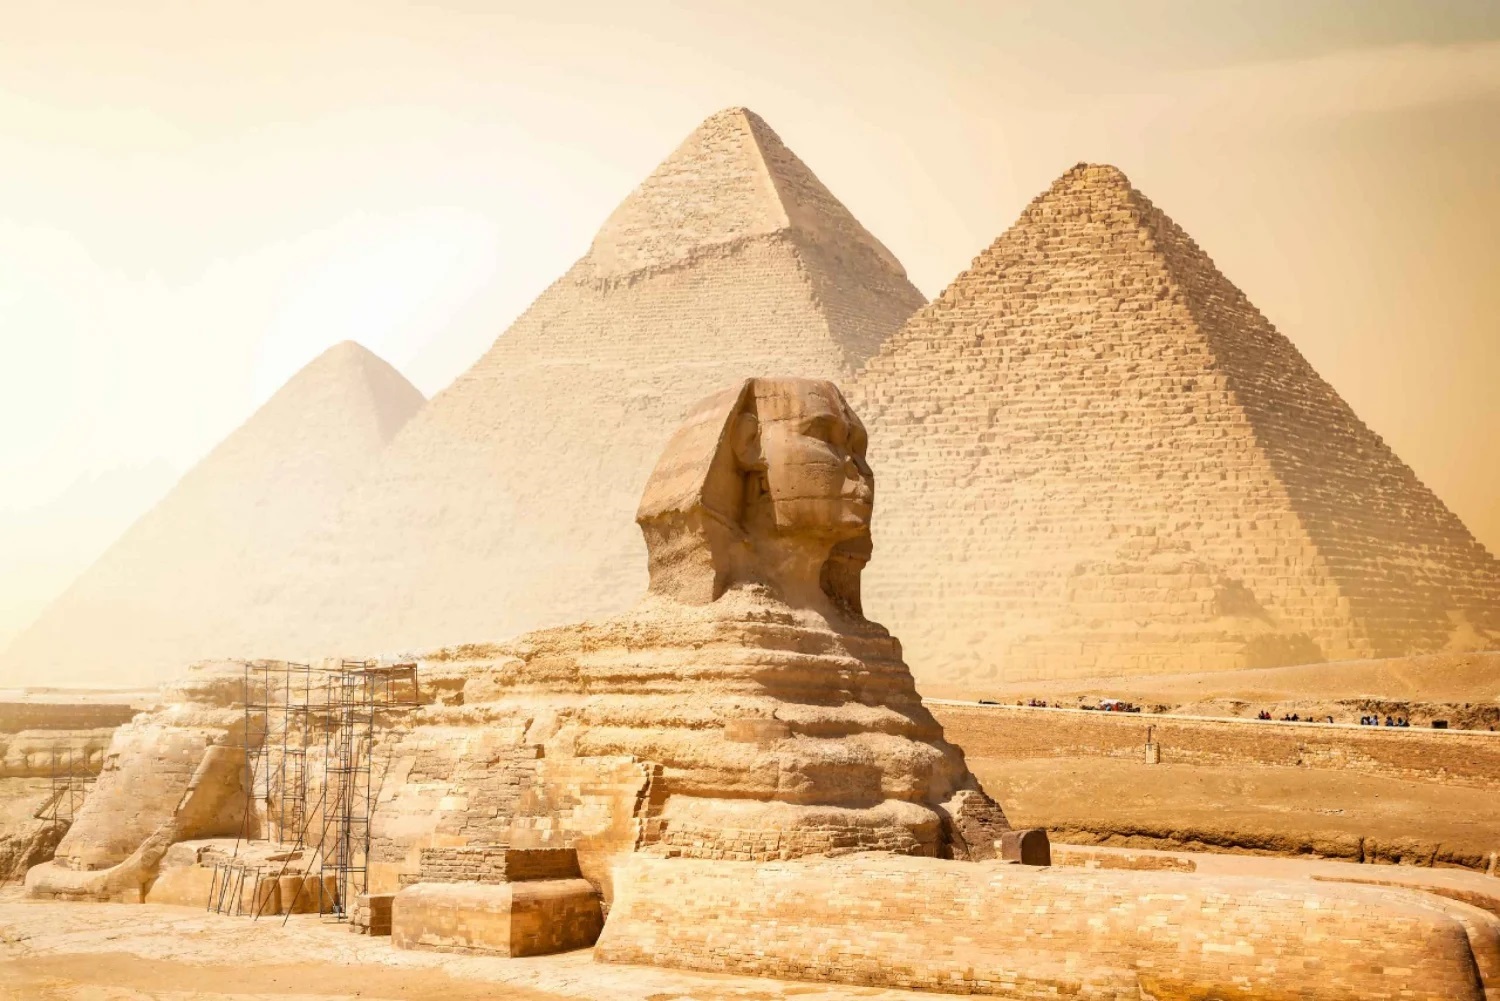 Giza Pyramids and sphinx